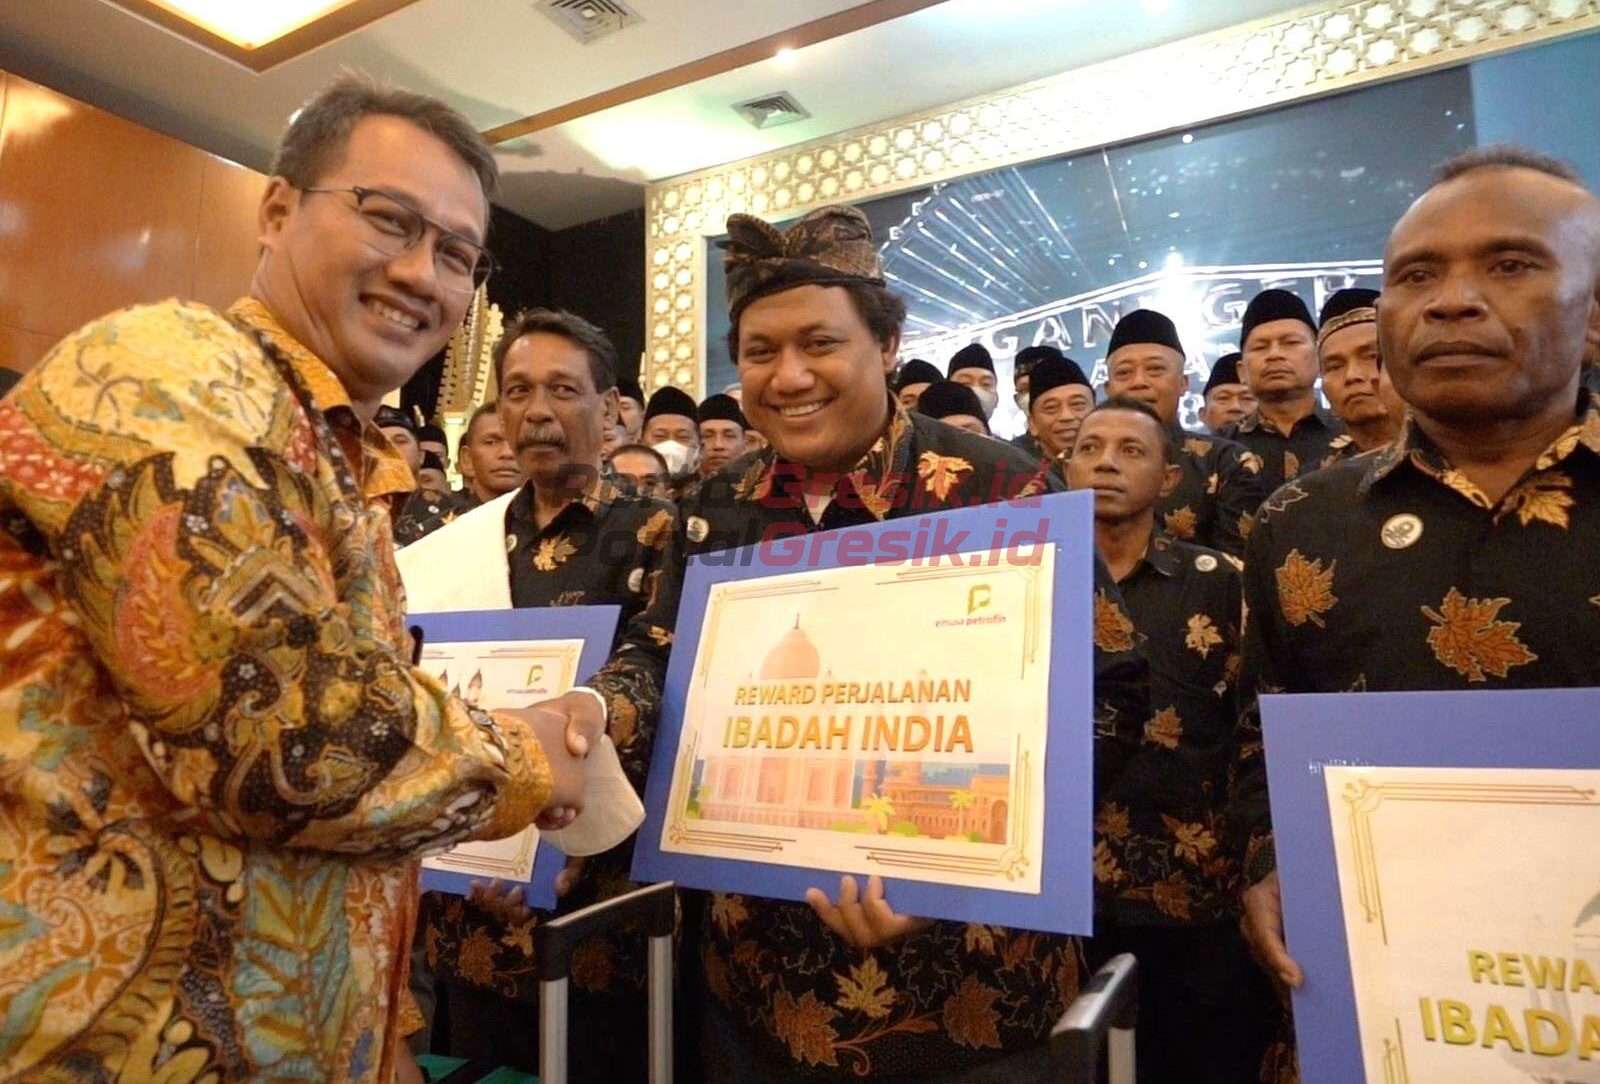 Aditya Budi Prabowo selaku Direktur Utama PT Elnusa Petrofin saat Berikan Reward Perjalanan Ibadah kepada Awak Mobil Tangki dan Pekerja Berprestasi